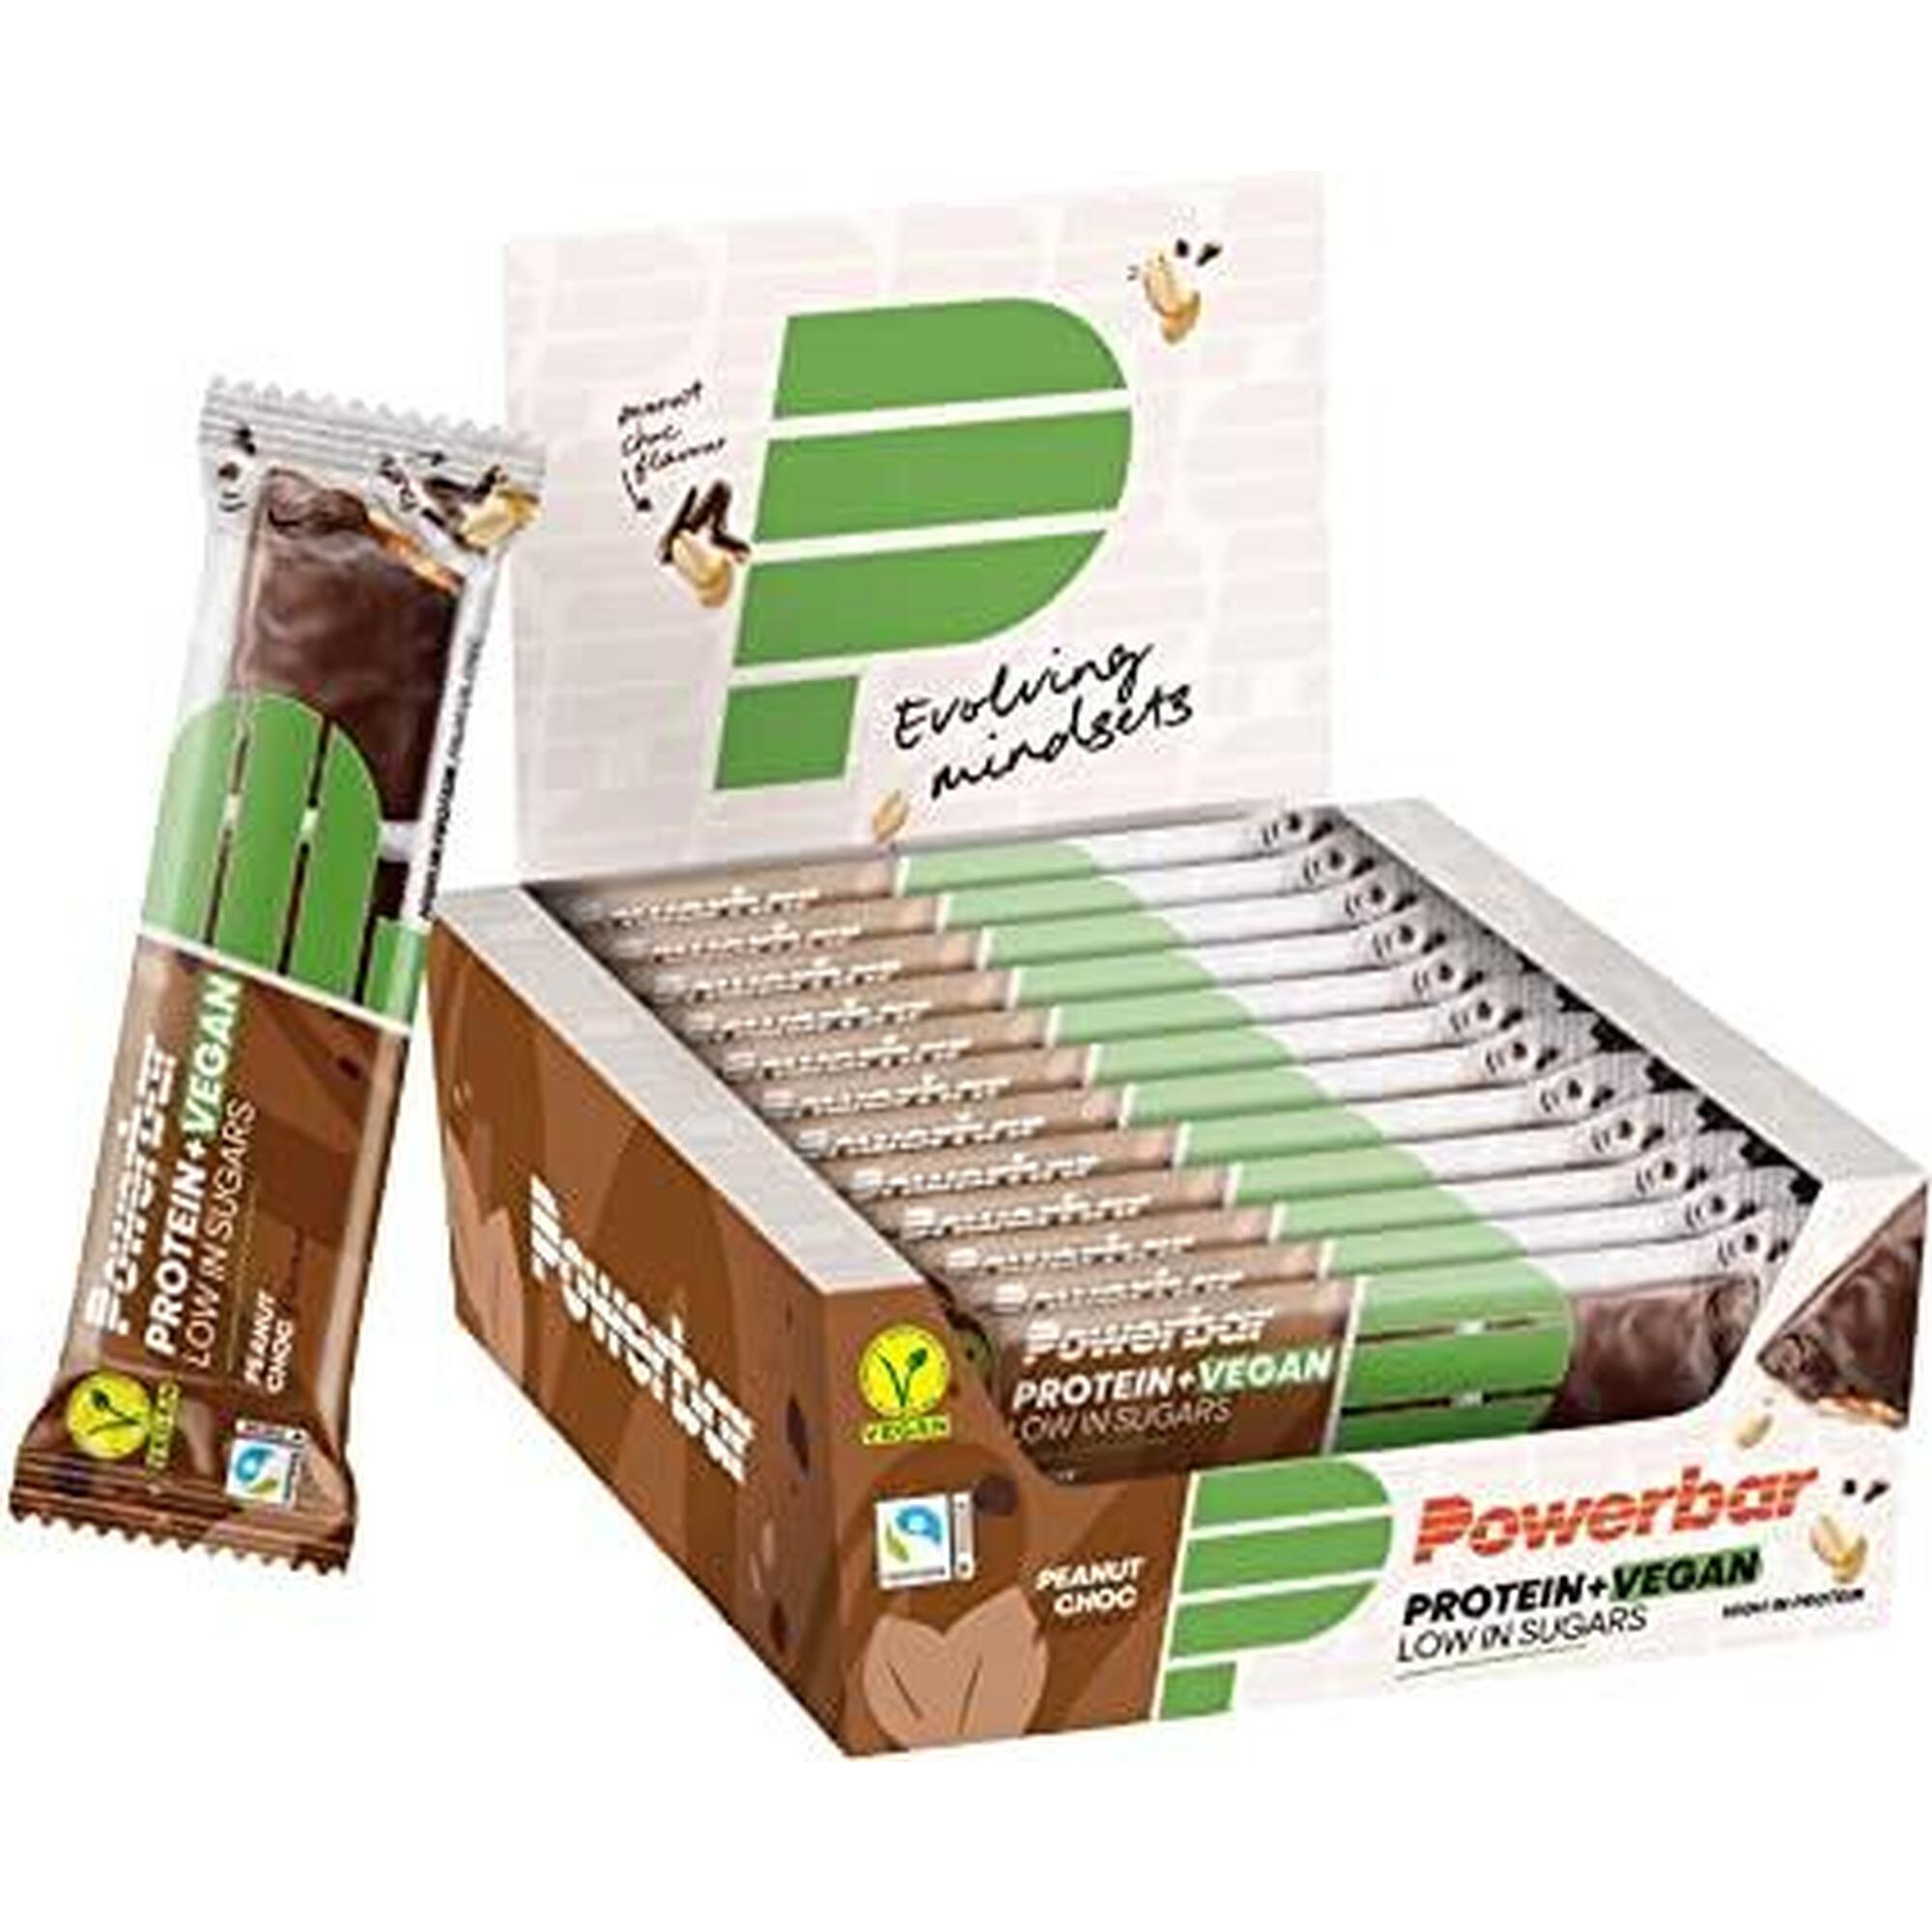 Veganer Proteinriegel 2x21g PowerBar (Packung mit 12 Stück)